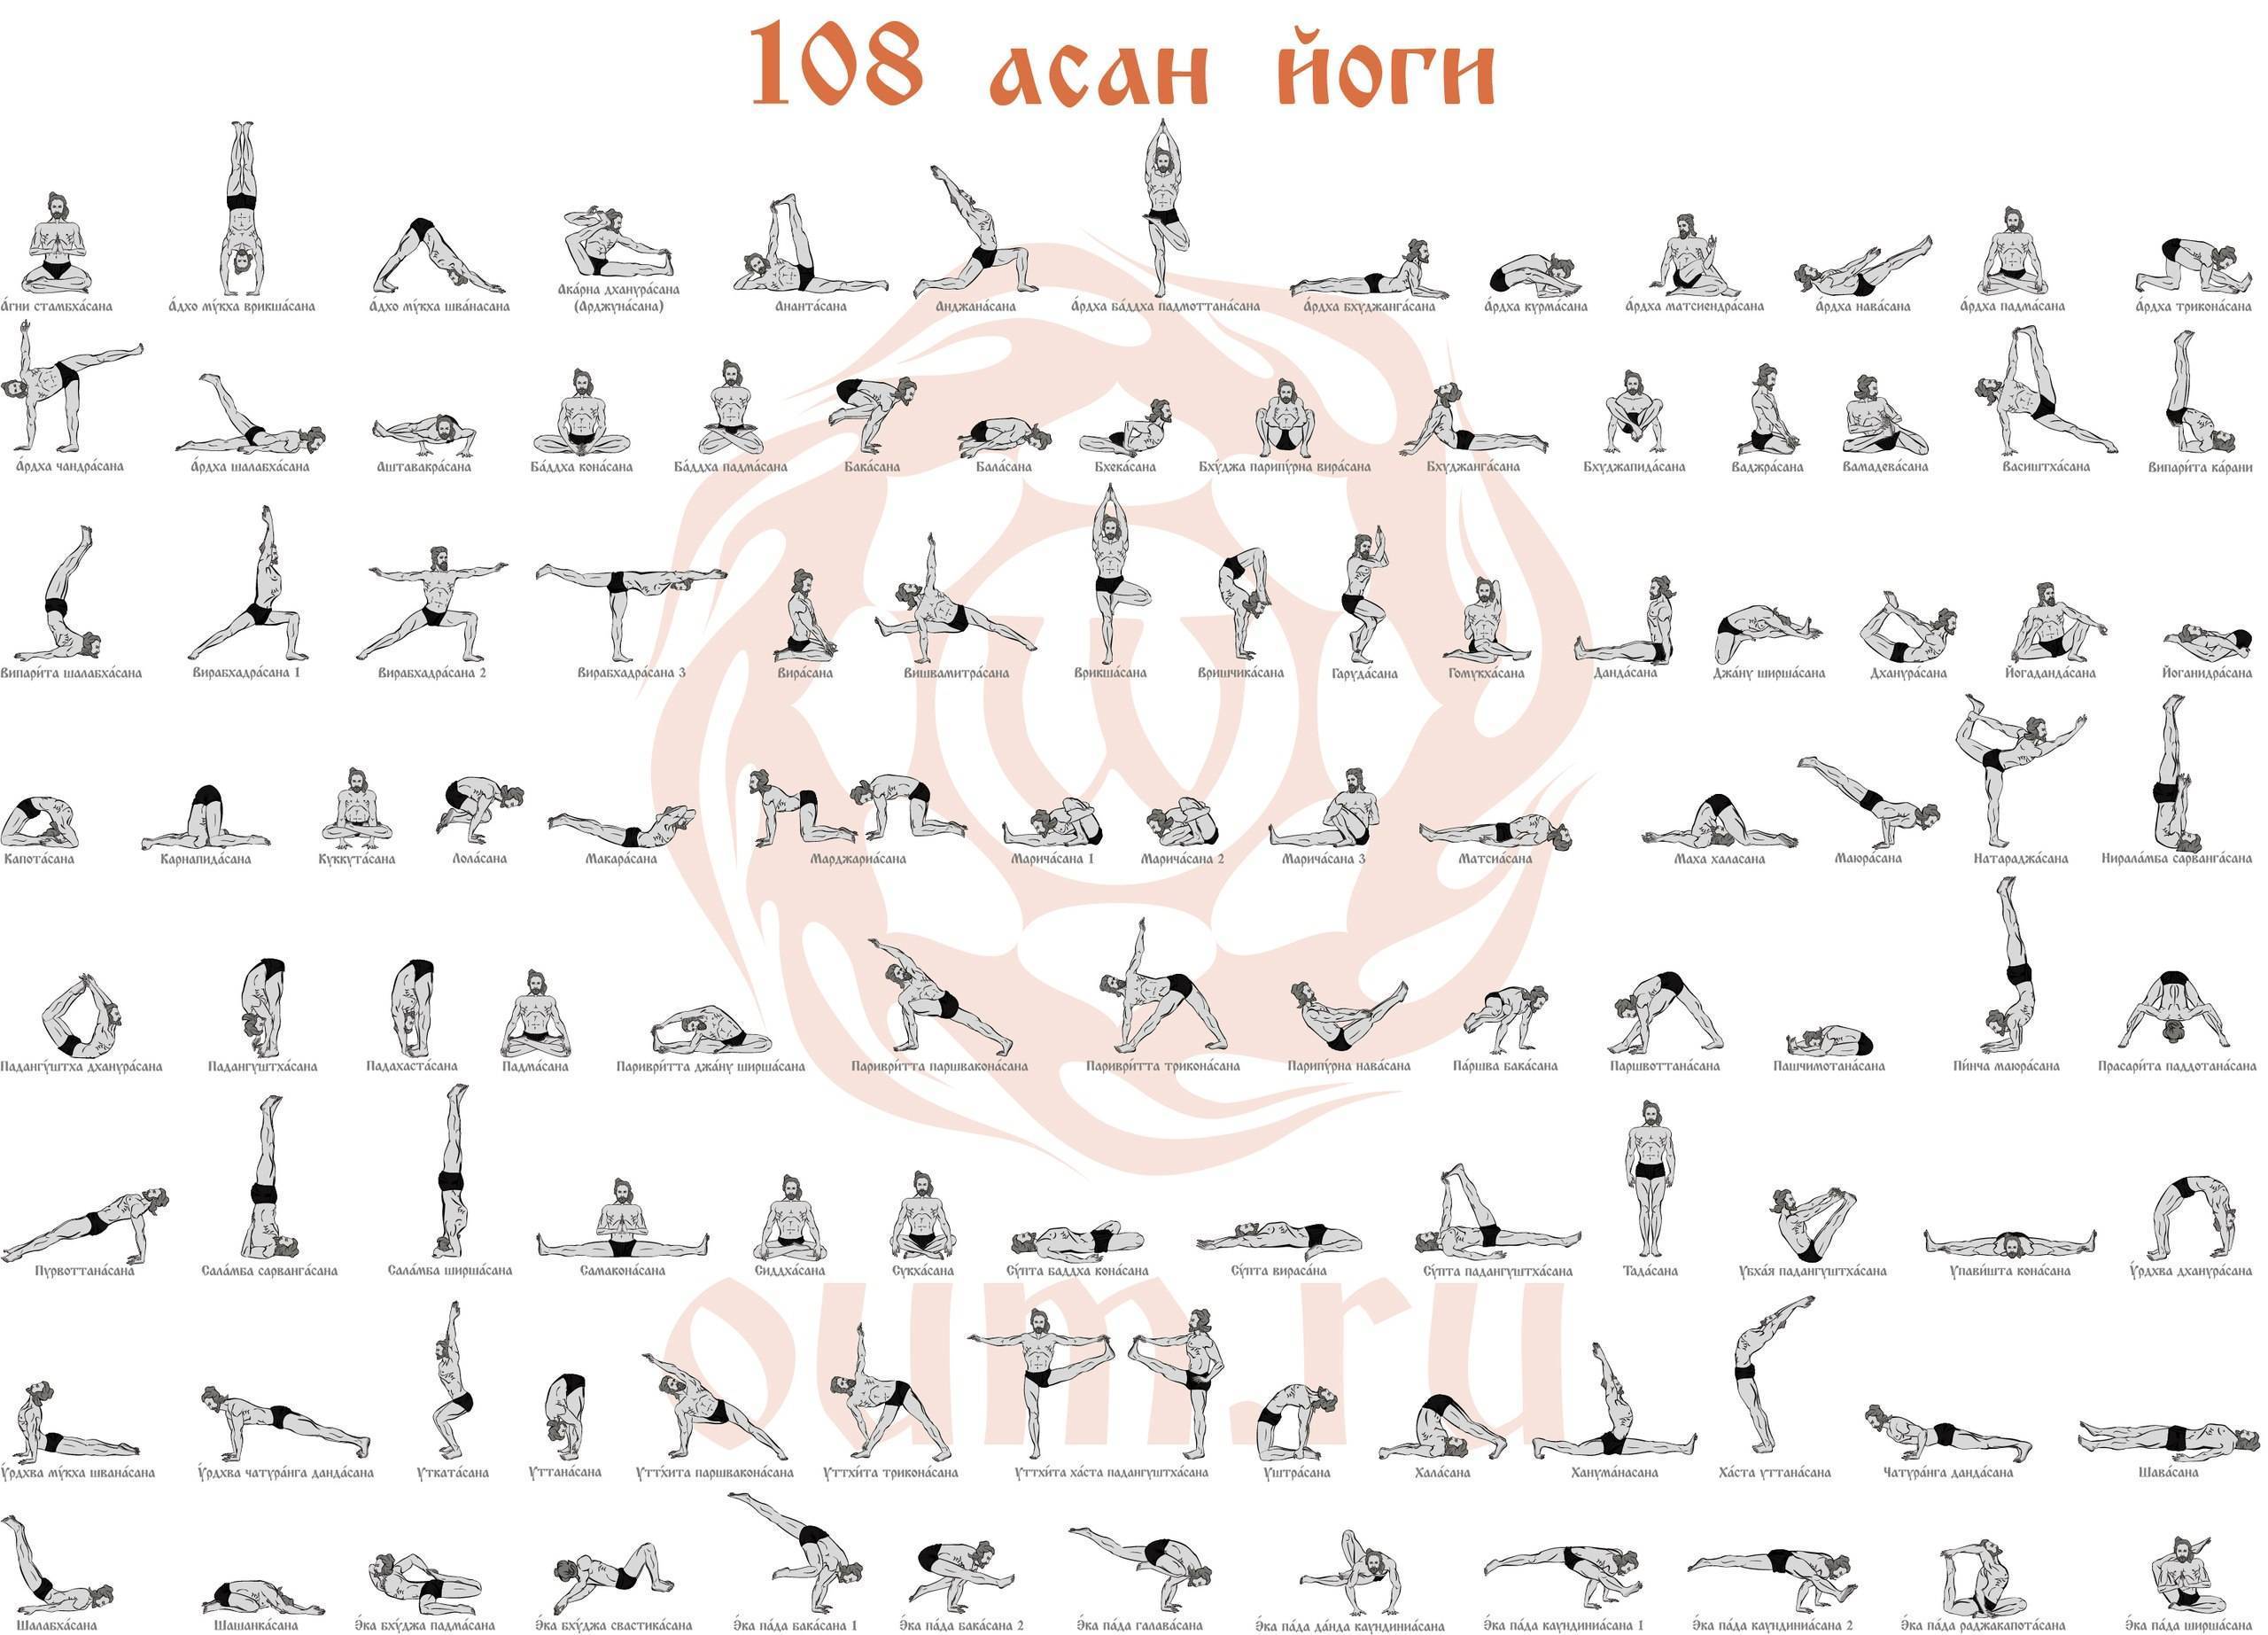 Асаны хатха-йоги для начинающих: основные упражнения и комплексы